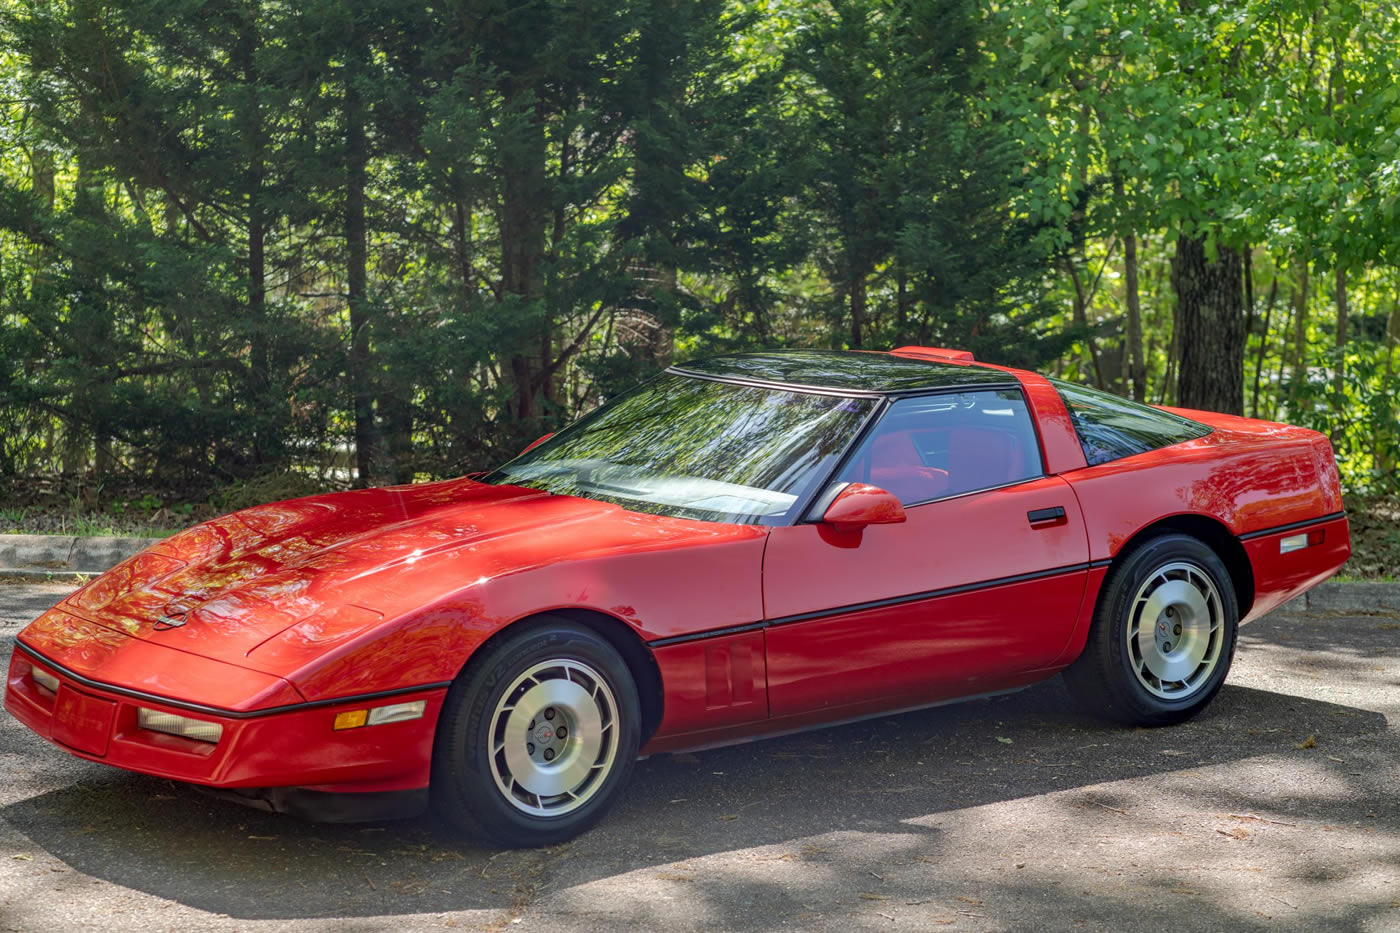 1987 Corvette Coupe in Bright Red